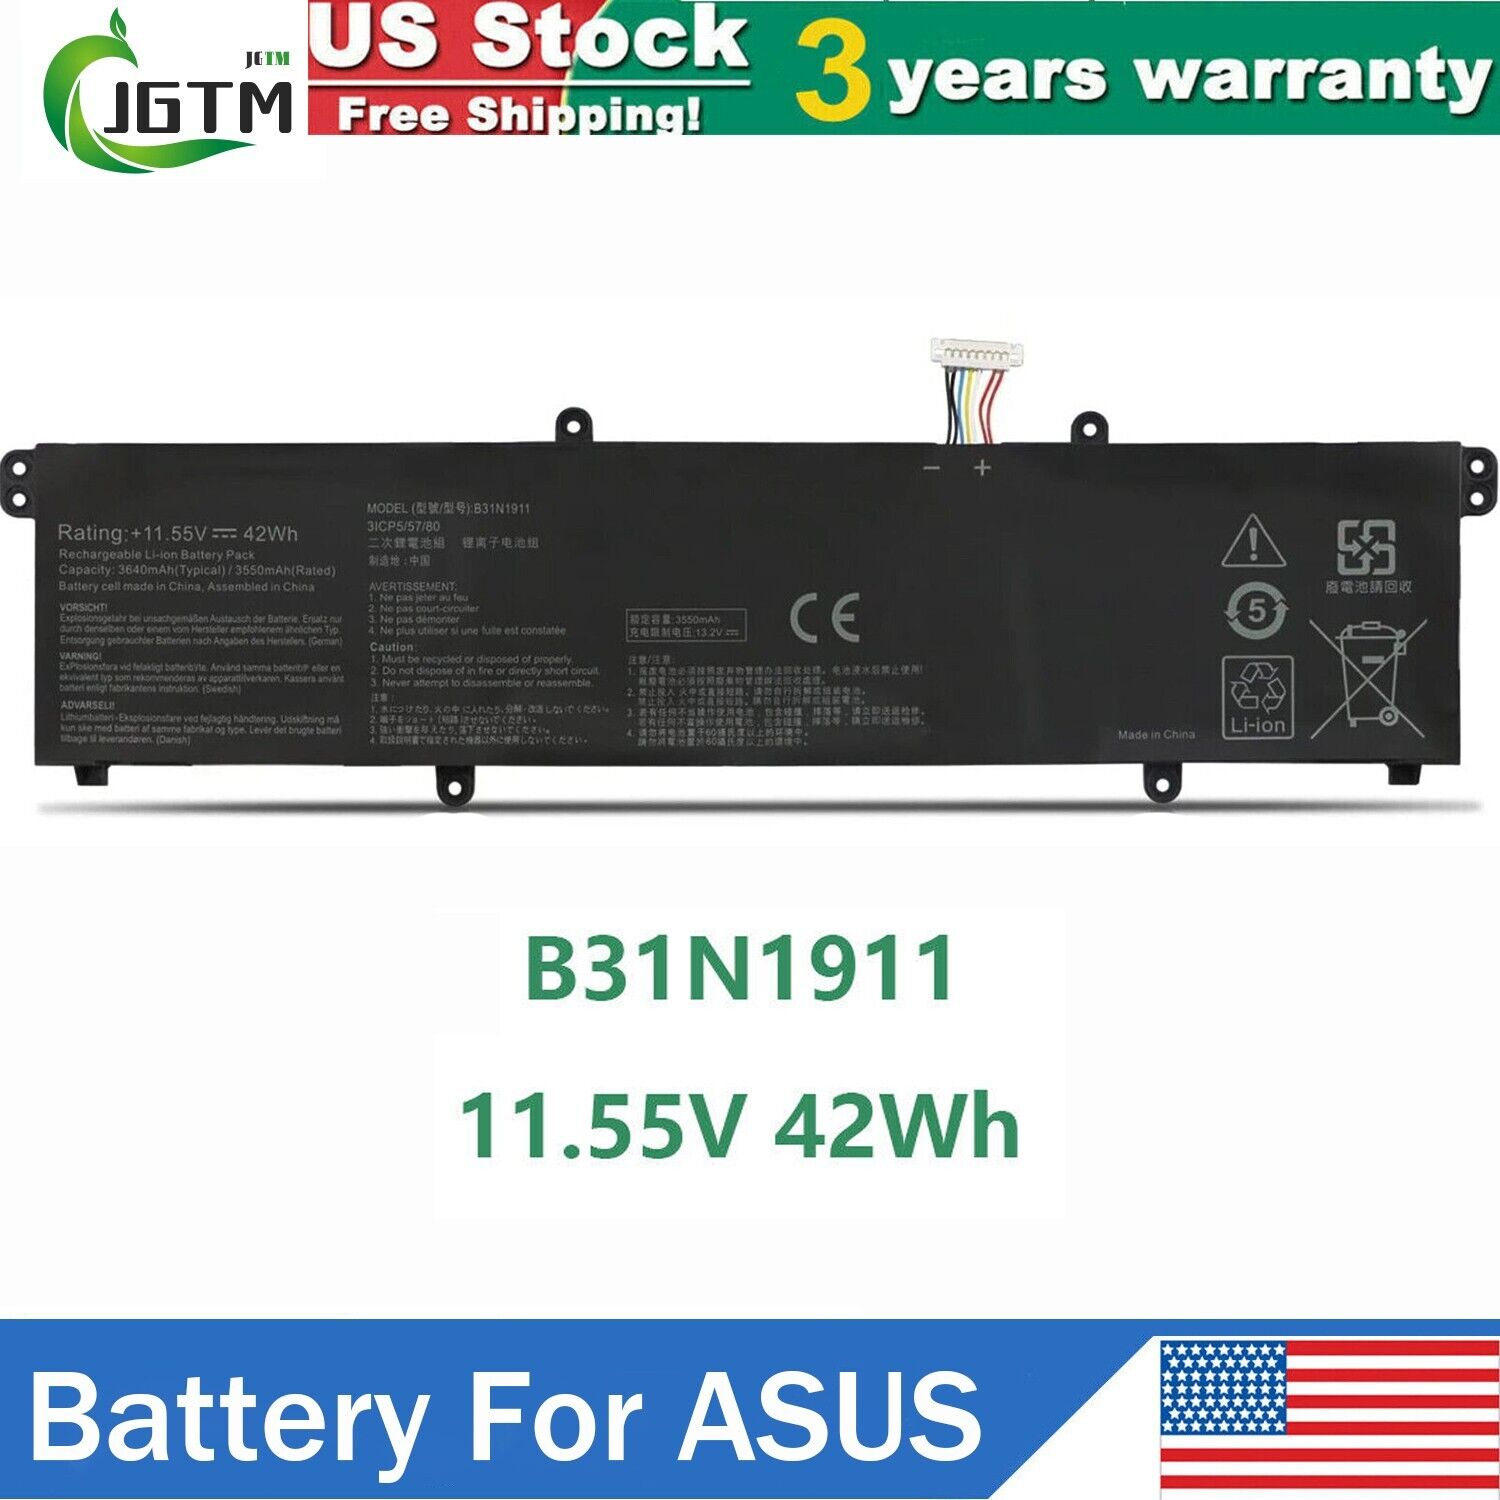 B31N1911 Battery for Asus VivoBook Flip 14 X421 TM420 R413 K413FA 42Wh 11.55V US